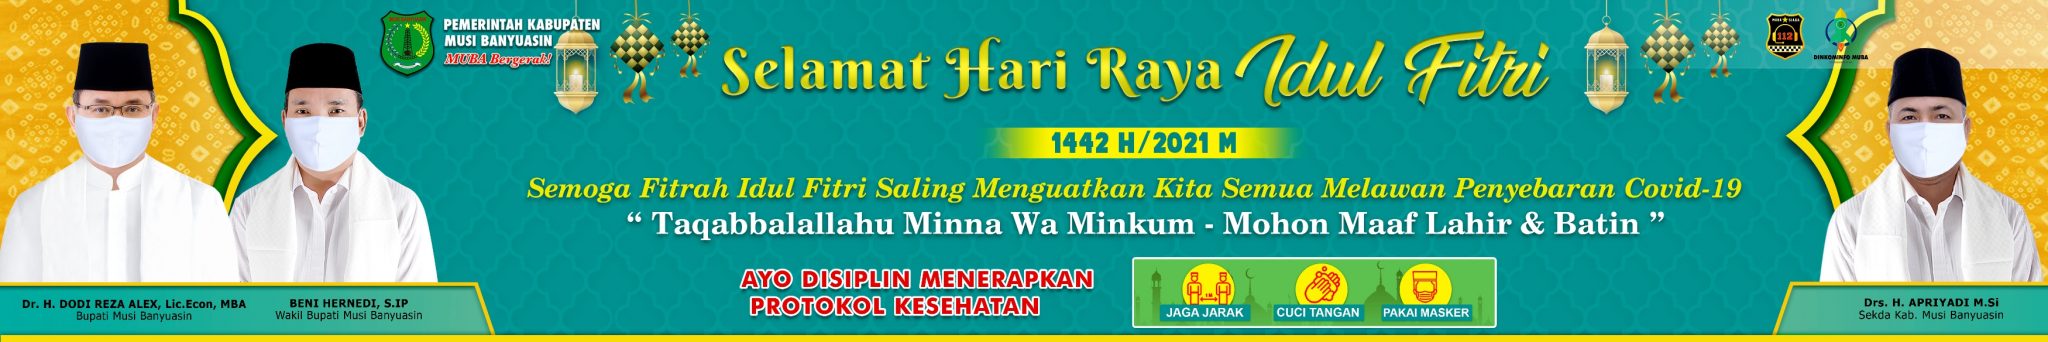 Pemerintah Kabupaten Musi Banyuasin : Selamat Hari Raya Idul Fitri 1442H/2021M